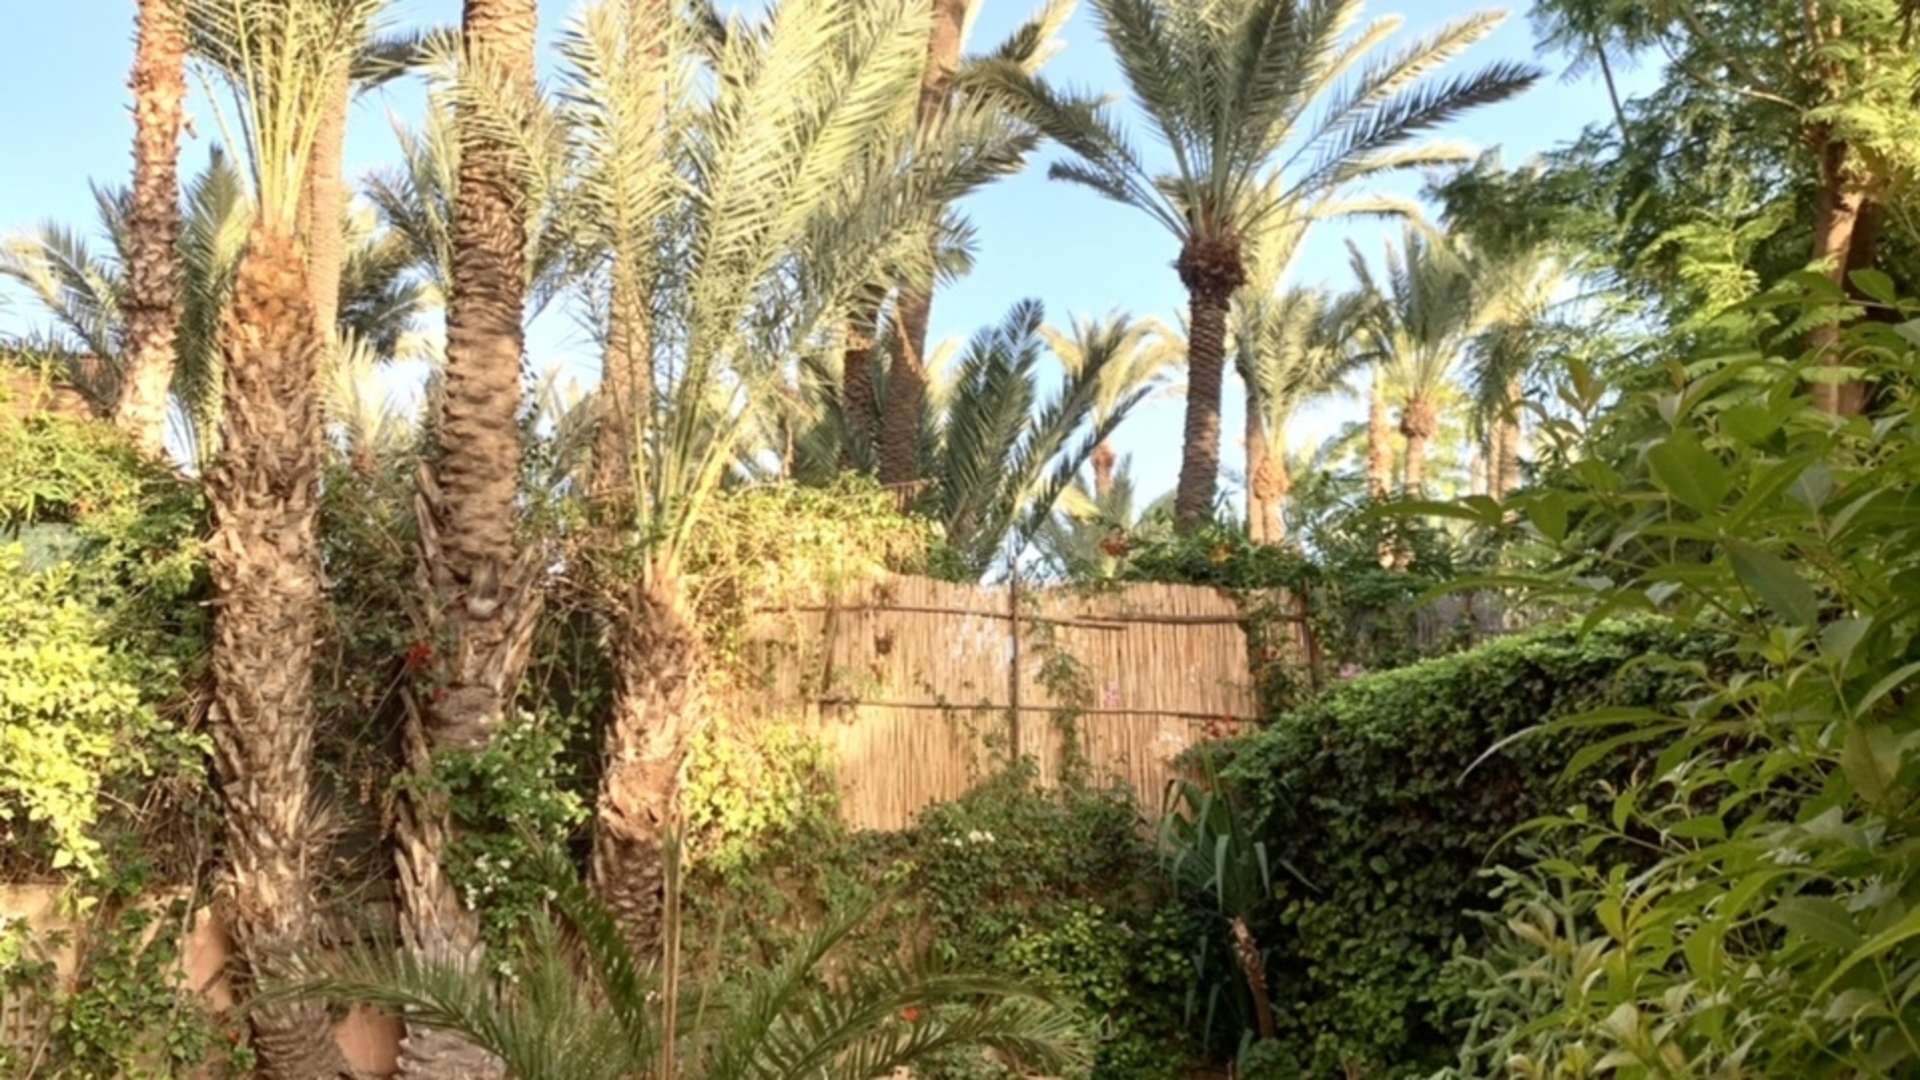 Vente,Villa,Villa 4ch avec piscine dans une résidence sécurisée à Targa Marrakech ,Marrakech,Targa